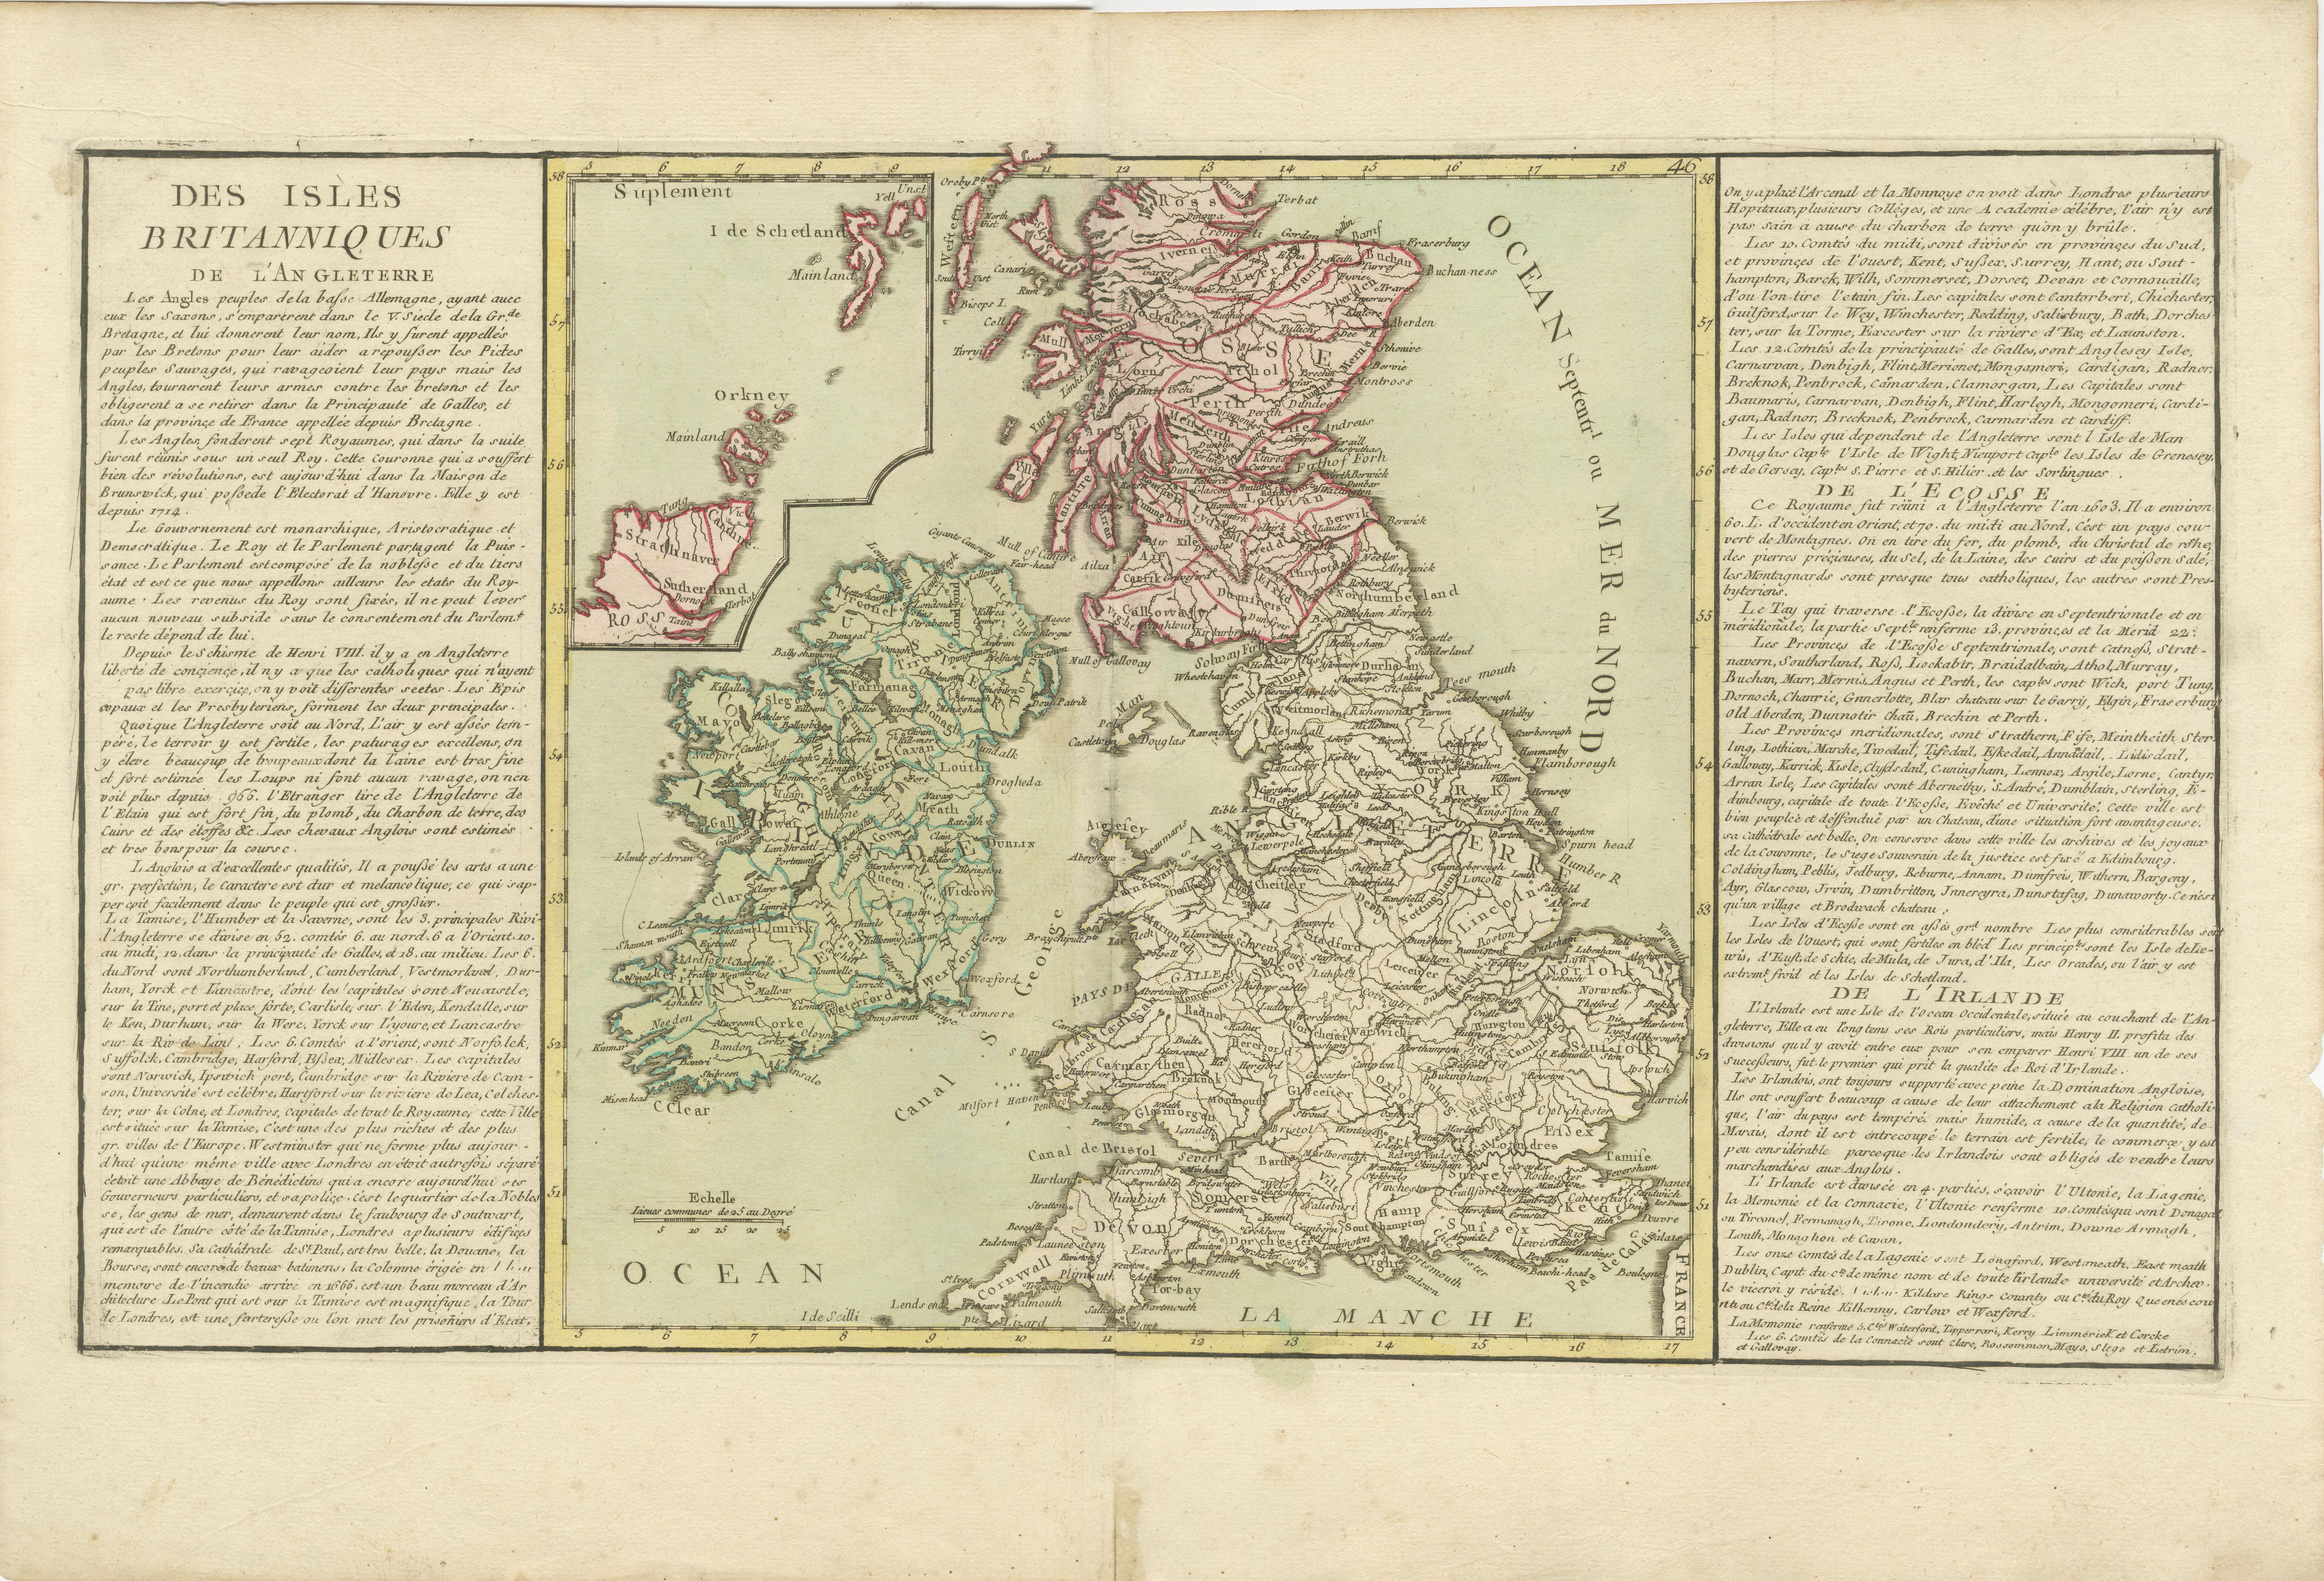 Antike Karte mit dem Titel 'Des Isles Britanniques'. Original antike Karte der britischen Inseln. Diese Karte ist in drei große Regionen des Vereinigten Königreichs im 18. Jahrhundert unterteilt: England, Irland und Schottland. Er ist farblich